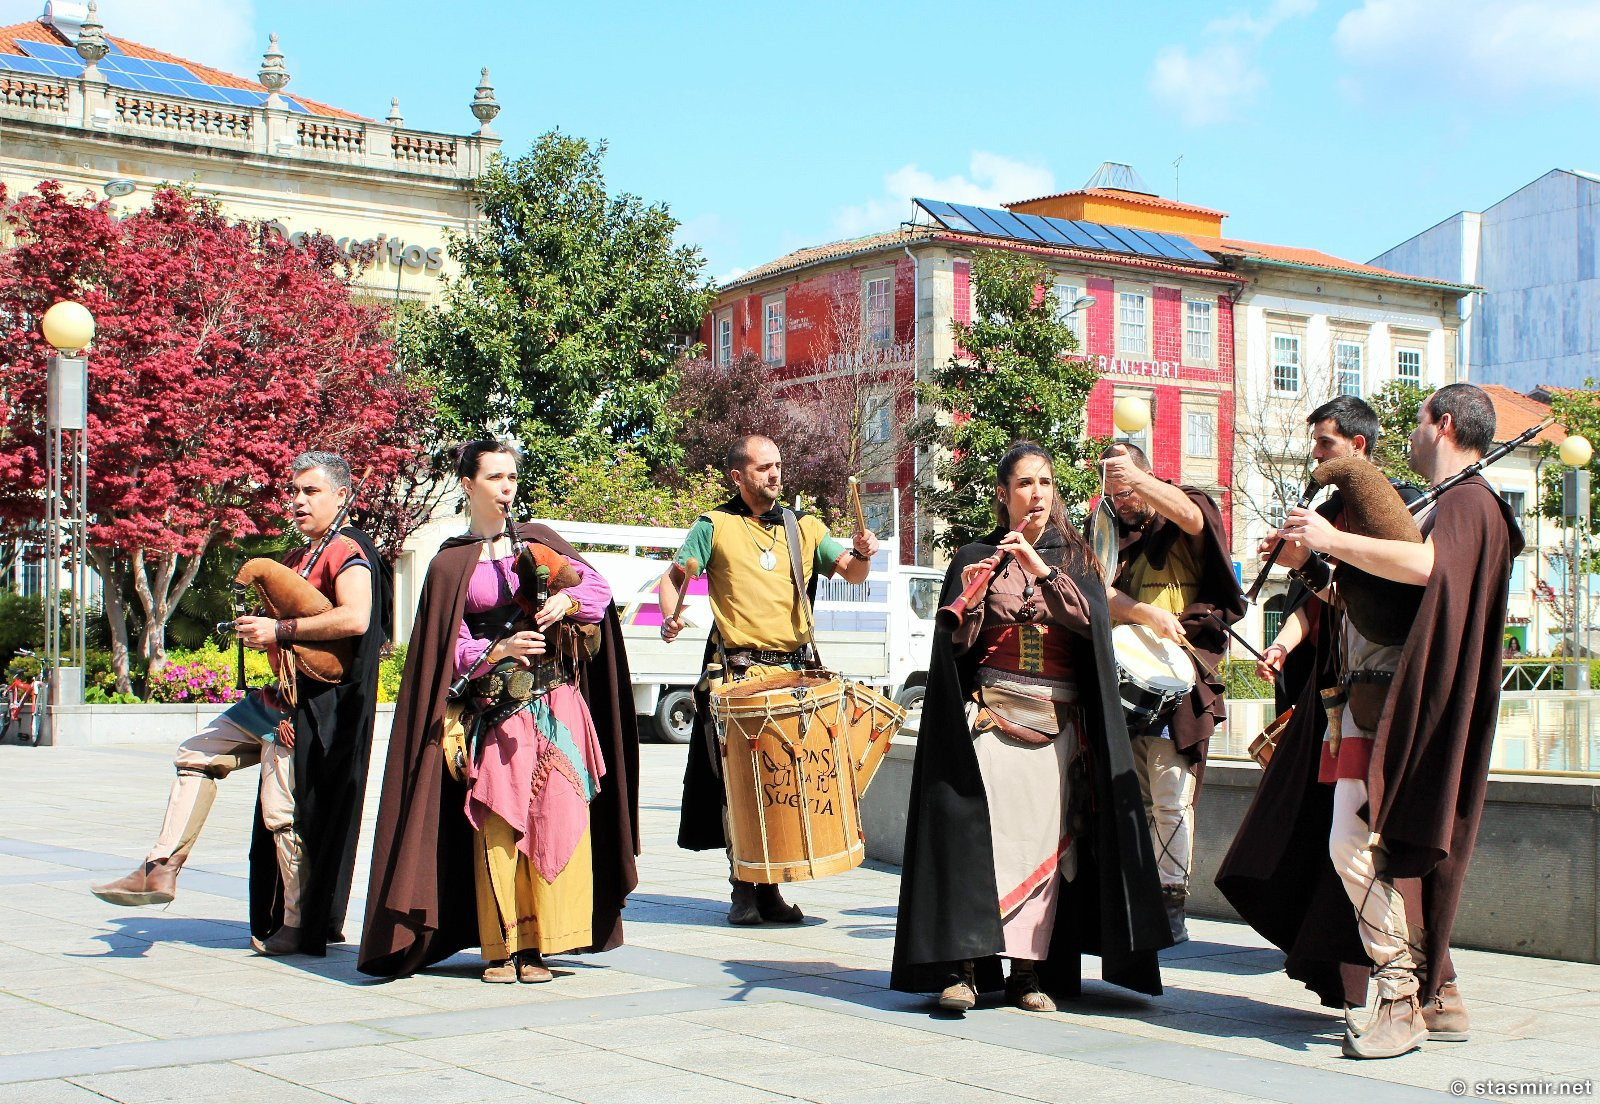 Брага: волынщики в традиционных костюмах на улице, фото Стасмир, photo Stasmir